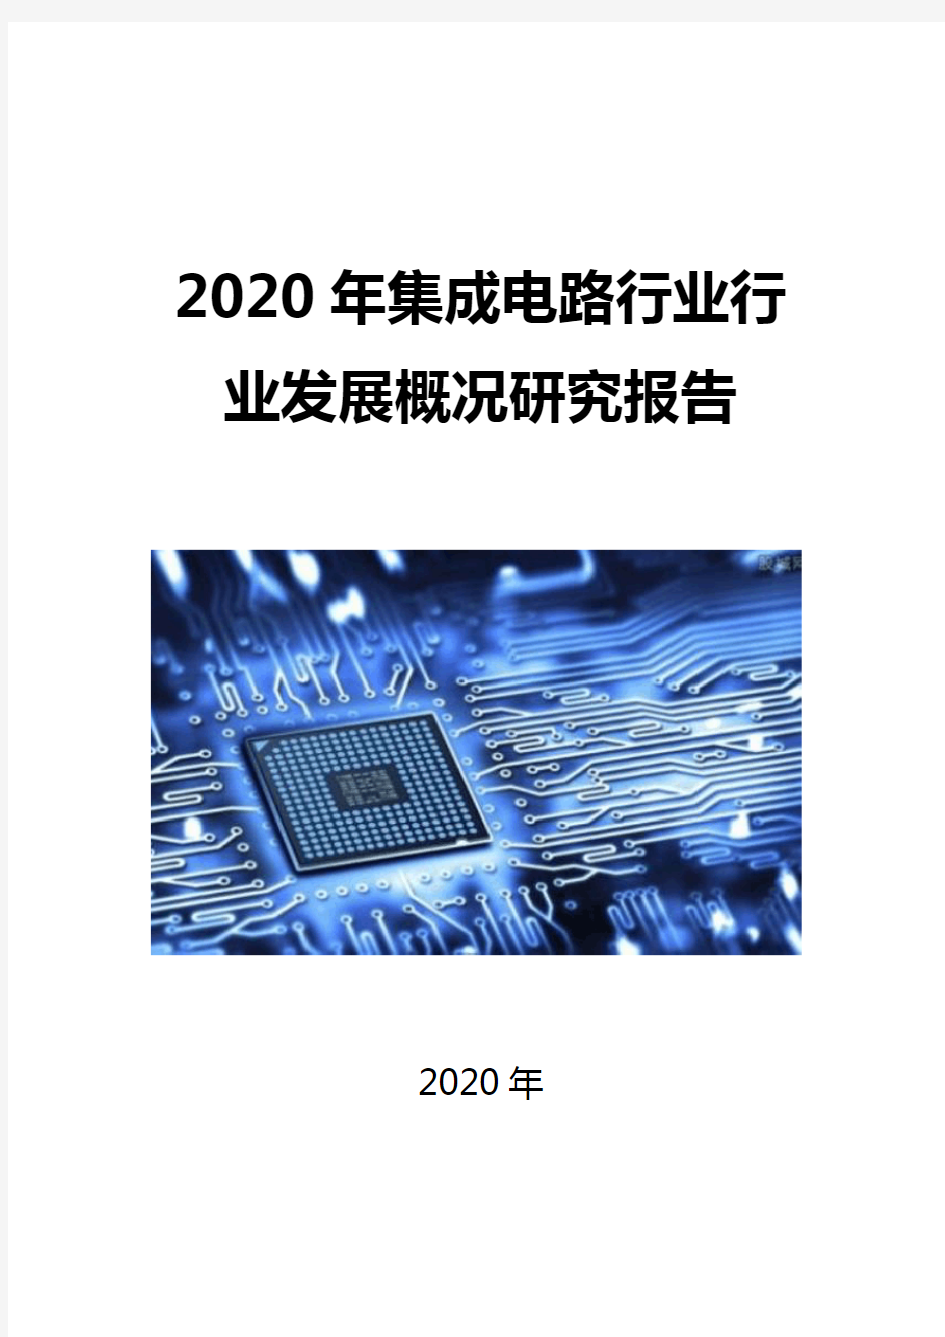 2020集成电路行业发展概况研究报告